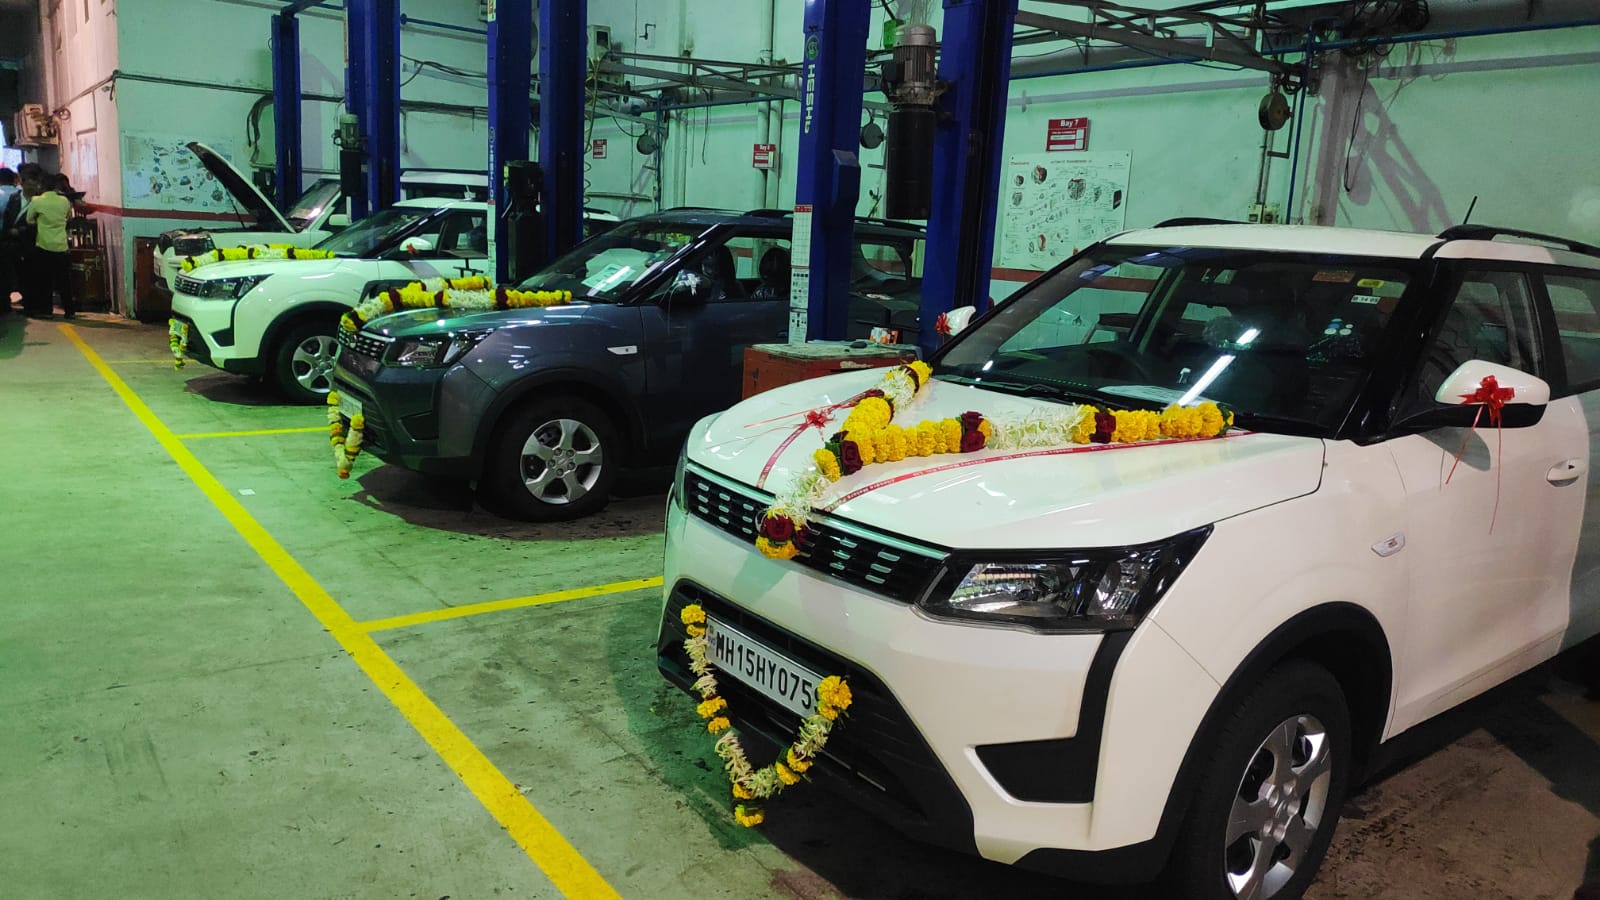 Mahindra cars to employees